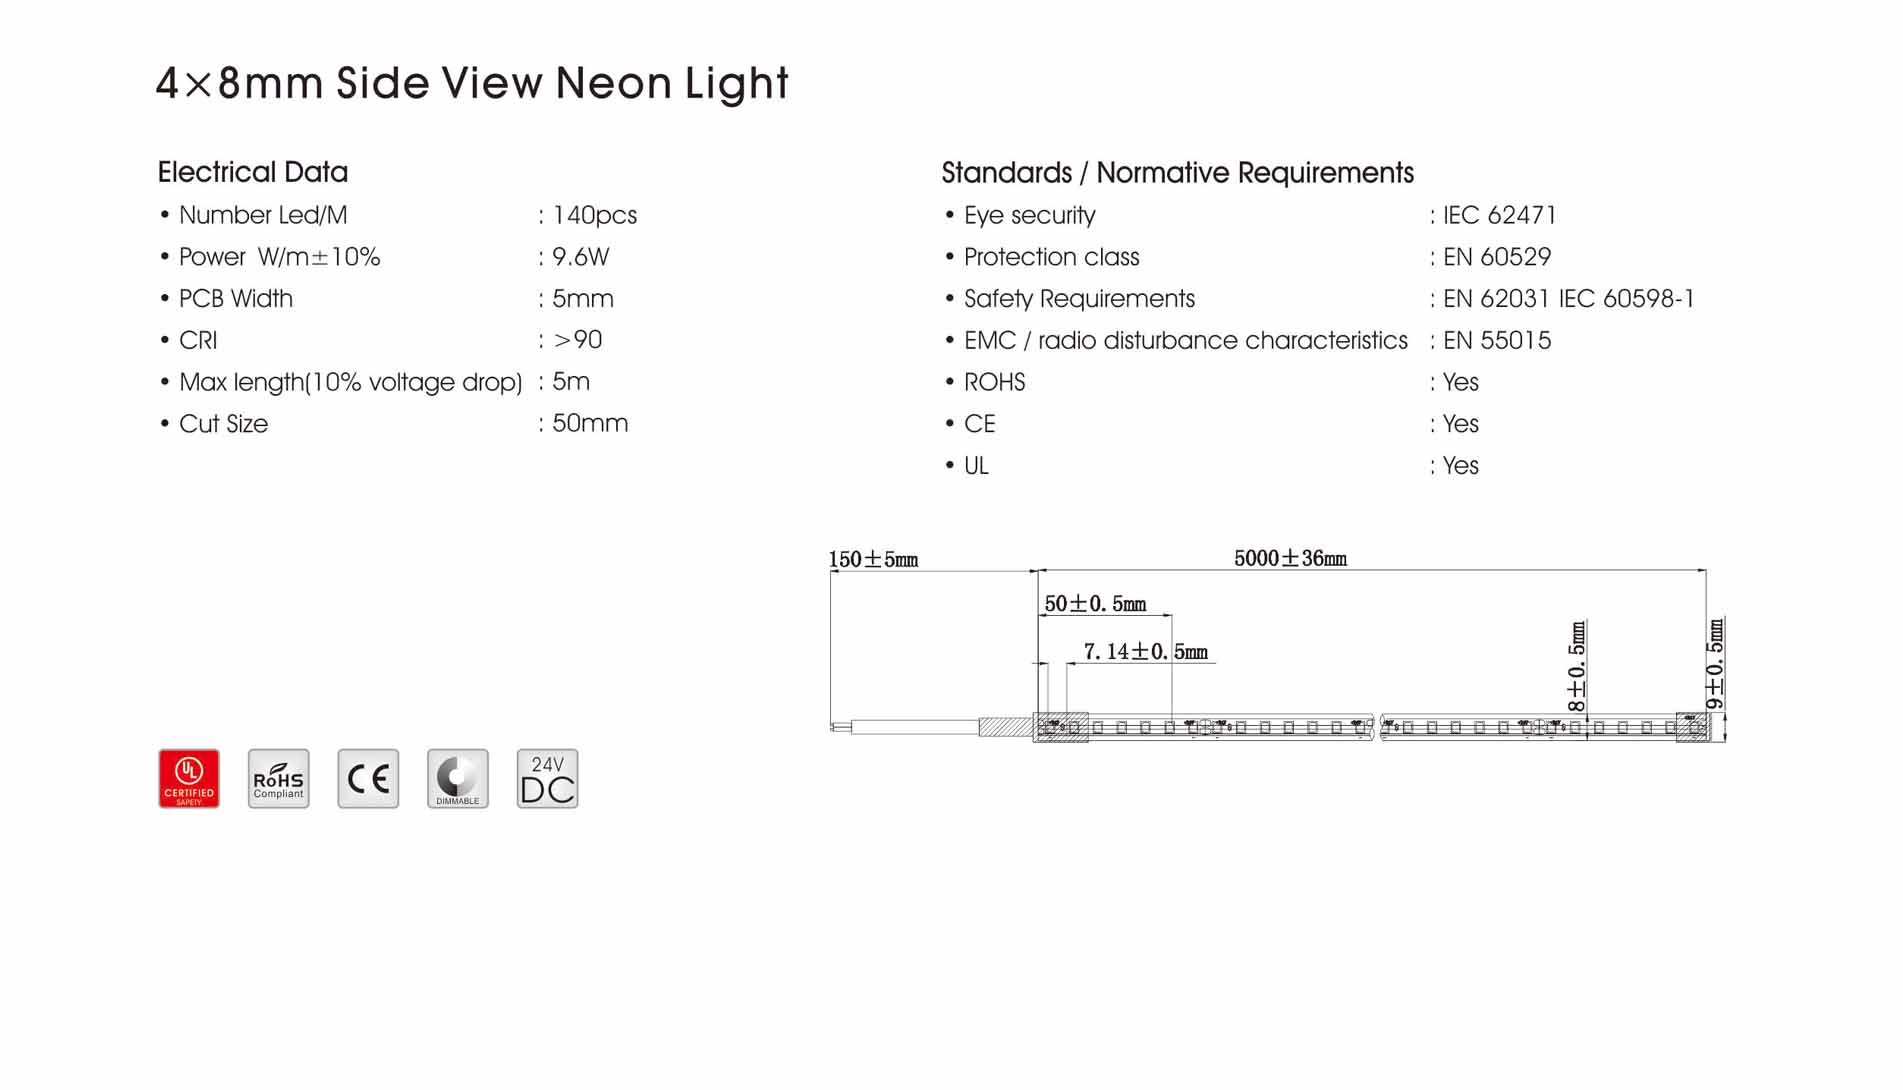 4x8mm-140LED-Side-View-Neon-Light-2.jpg